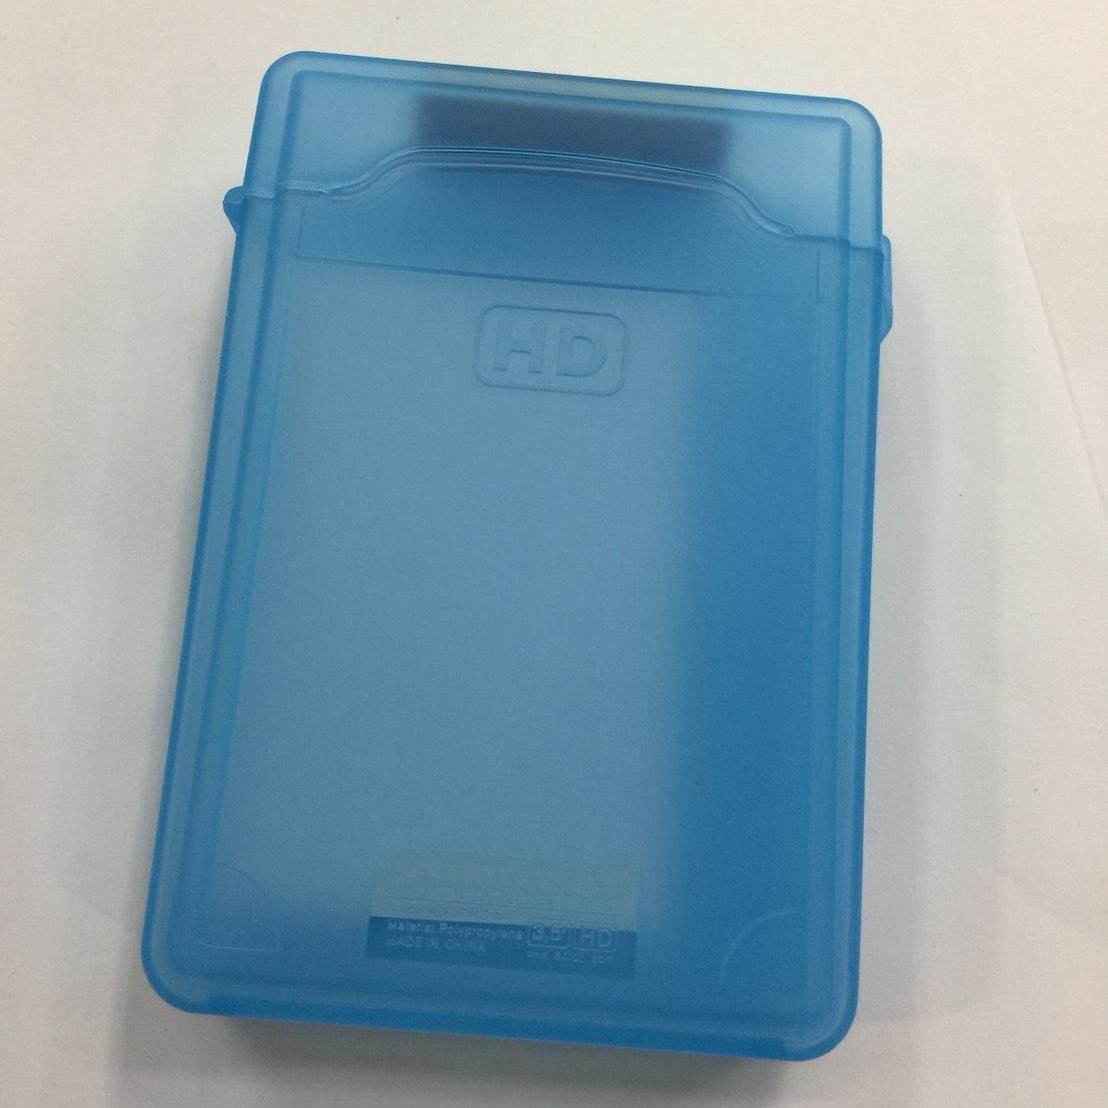 กล่องพลาสติก 3.5นิ้ว ใส่ ฮาร์ดดิสก์ ป้องกันฝุ่นหรือเก็บใส่ให้เป็นระเบียบ ใส่  HDD INTERNAL สีฟ้า( ออกใบกำกับภาษีได้ )